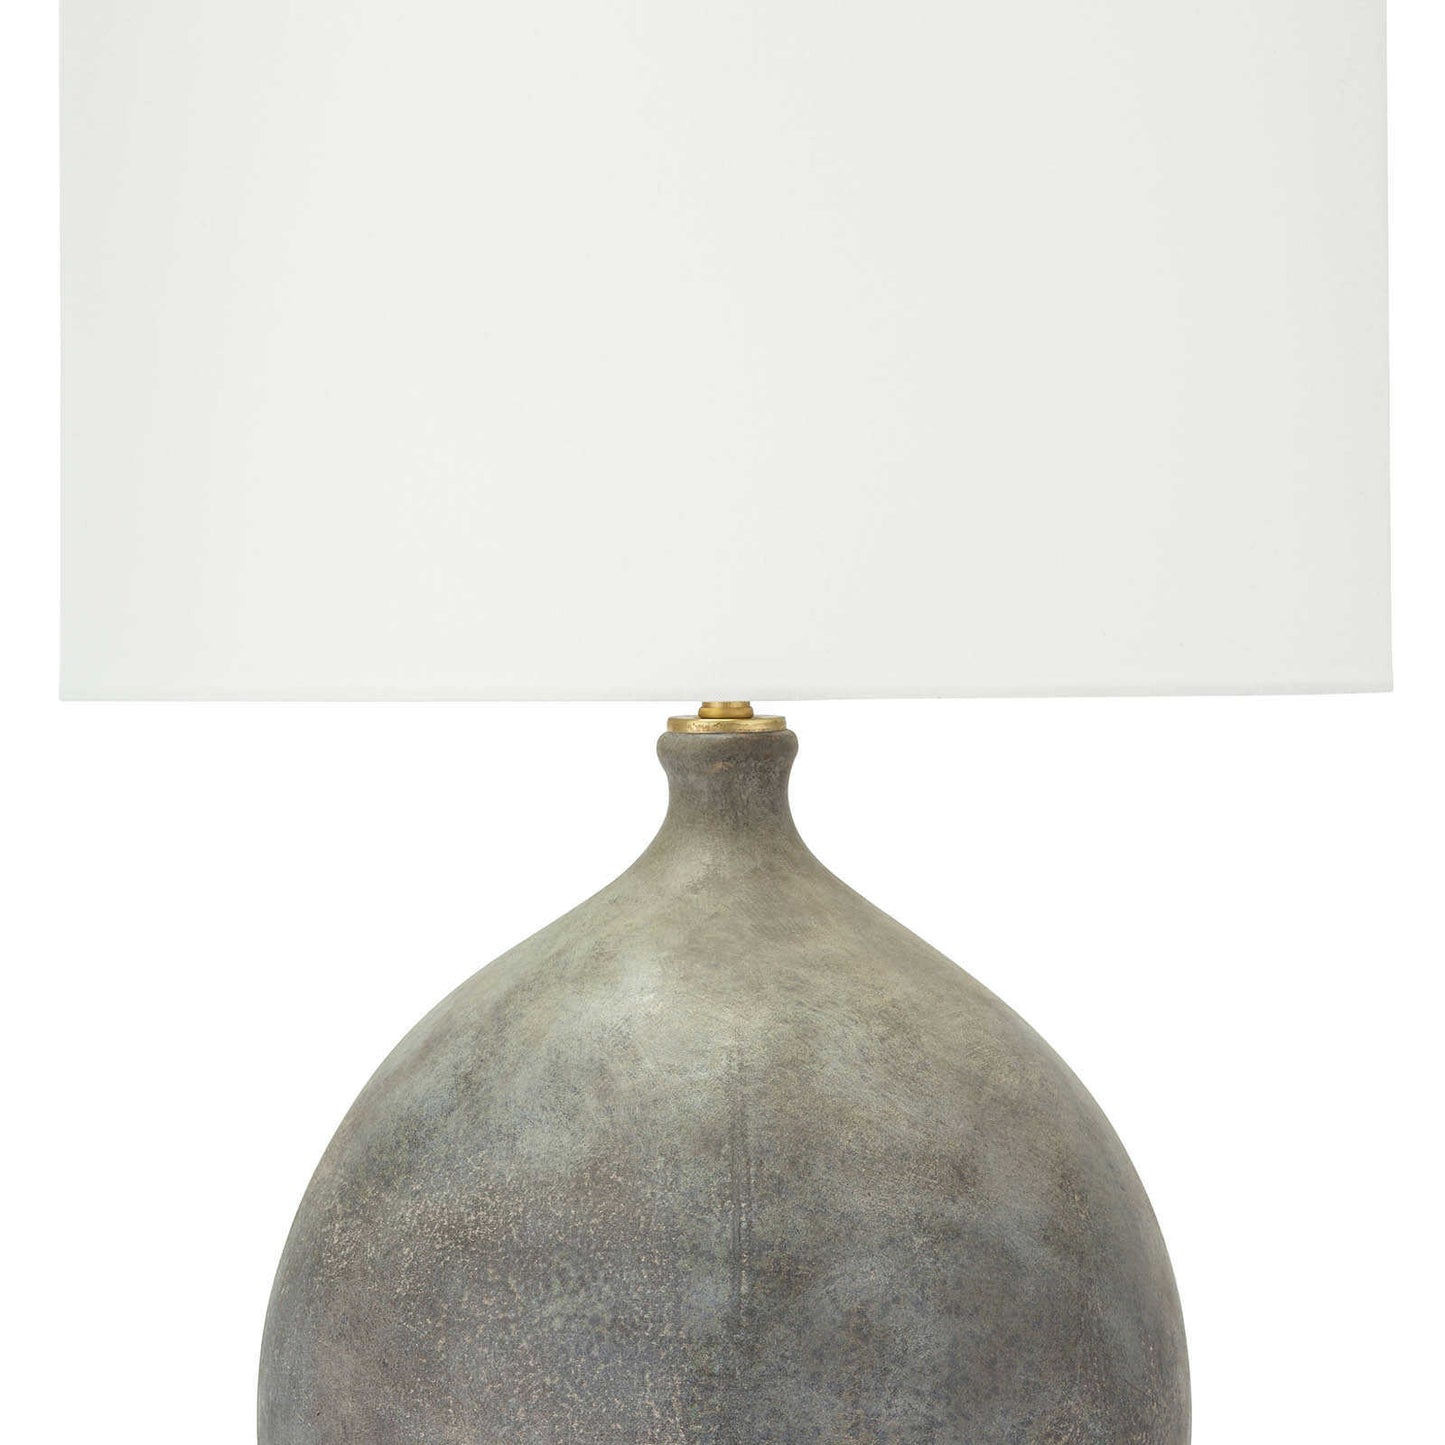 Dover Ceramic Table Lamp by Regina Andrew